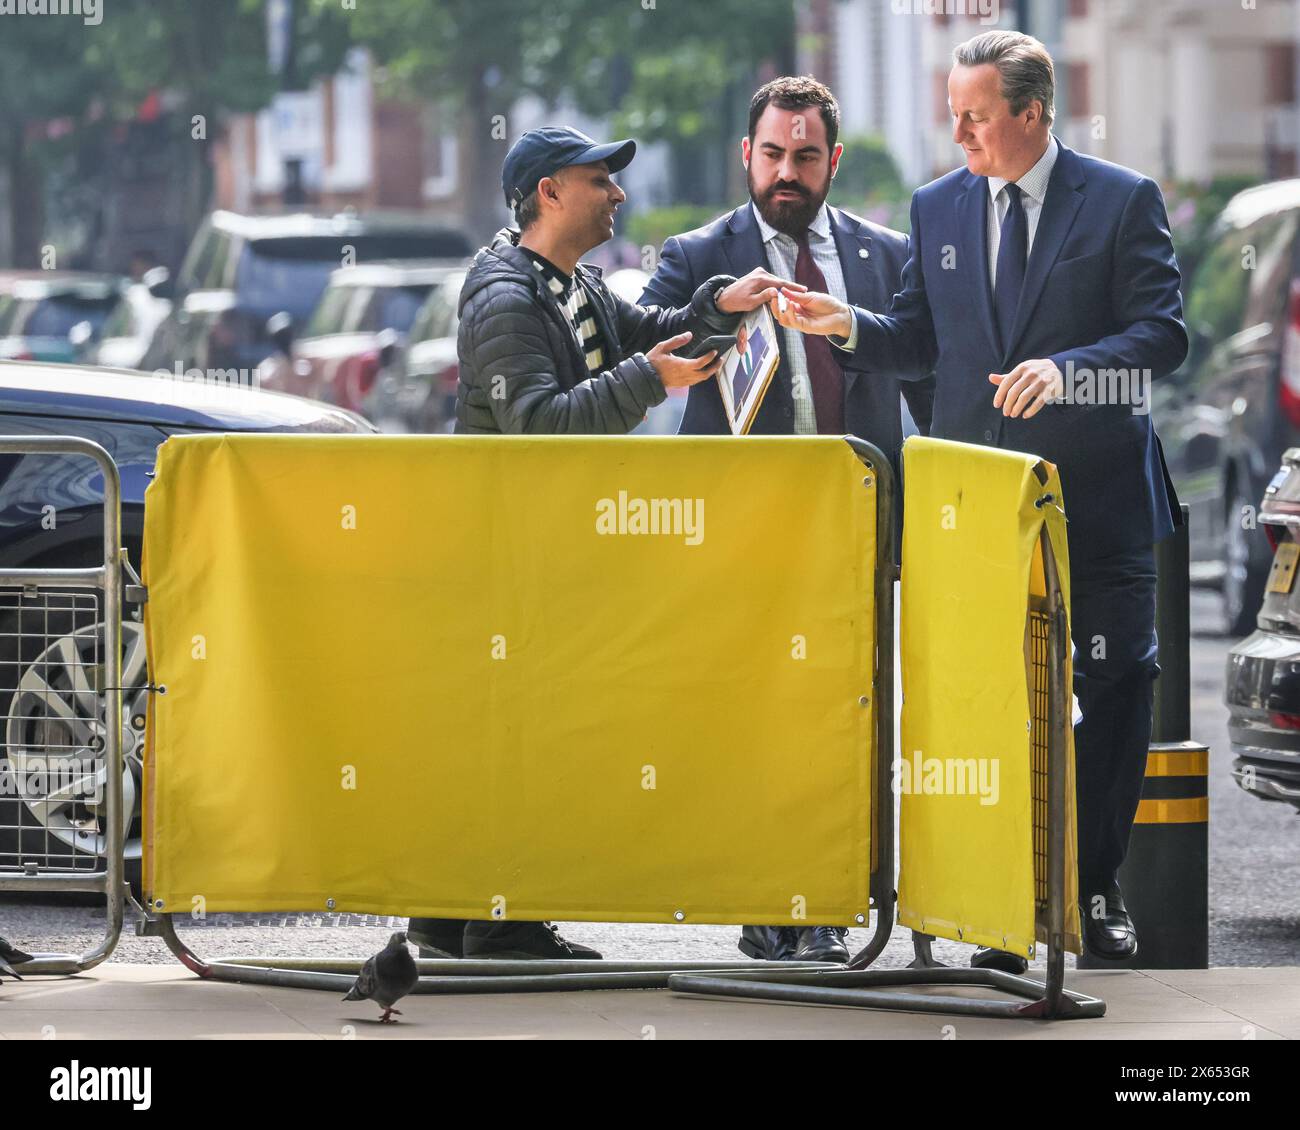 Londra, Regno Unito. 12 maggio 2024. Lord Cameron, David Cameron, Segretario di Stato per gli affari Esteri, Commonwealth e sviluppo, firmano autografi prima della BBC per i programmi della domenica mattina. Crediti: Imageplotter/Alamy Live News Foto Stock